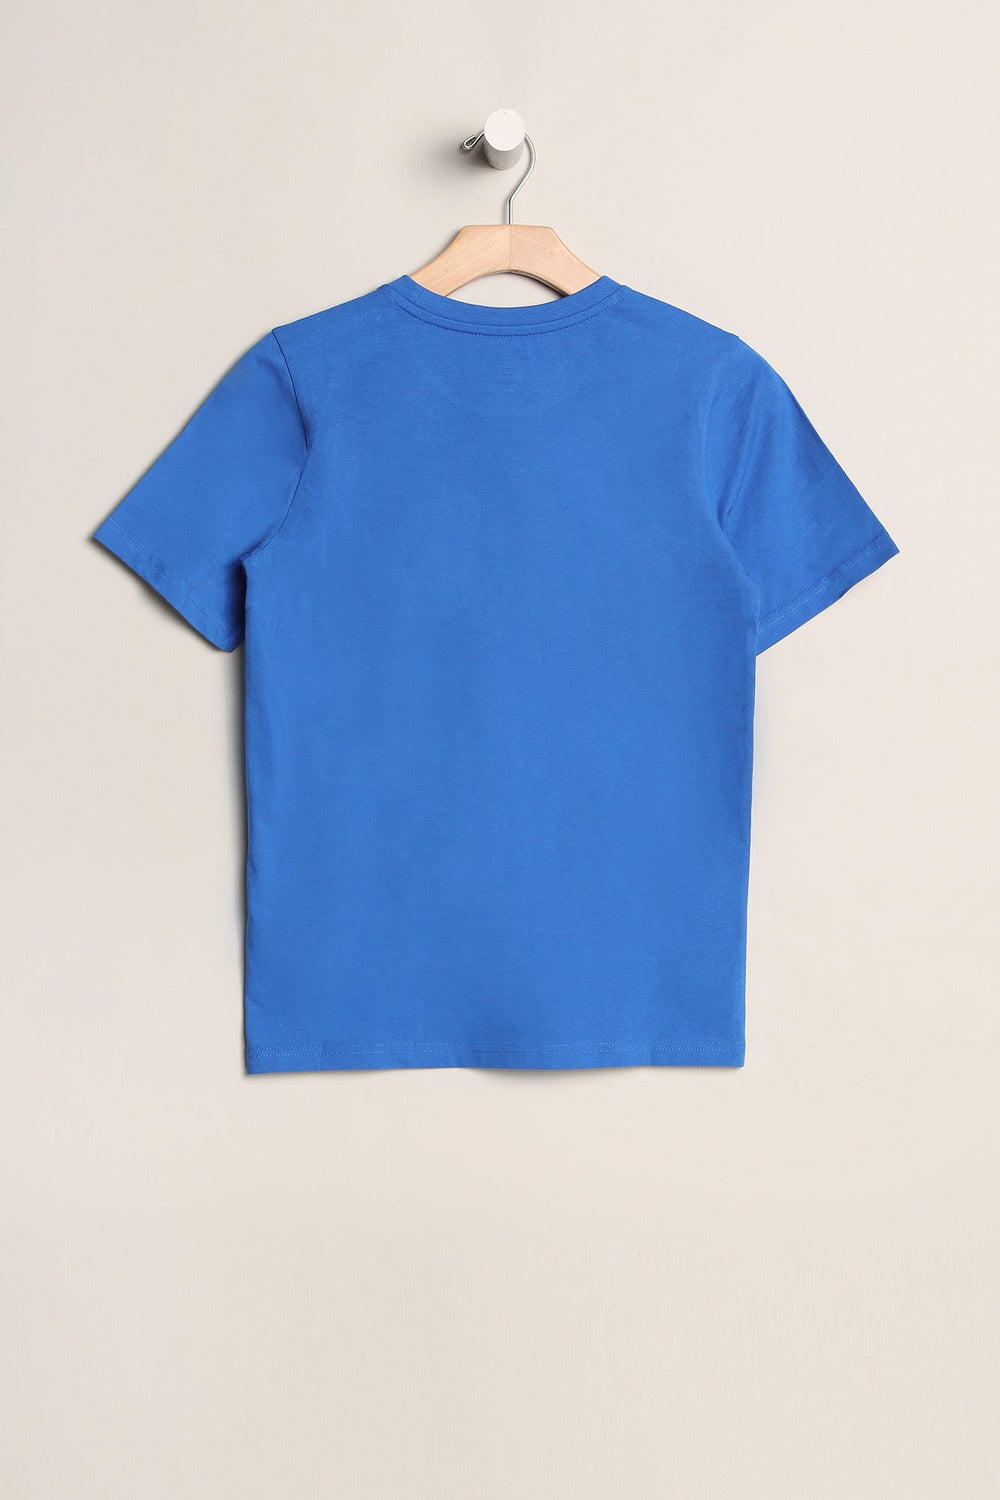 T-Shirt Patch Zoomart Zoo York Junior Bleu